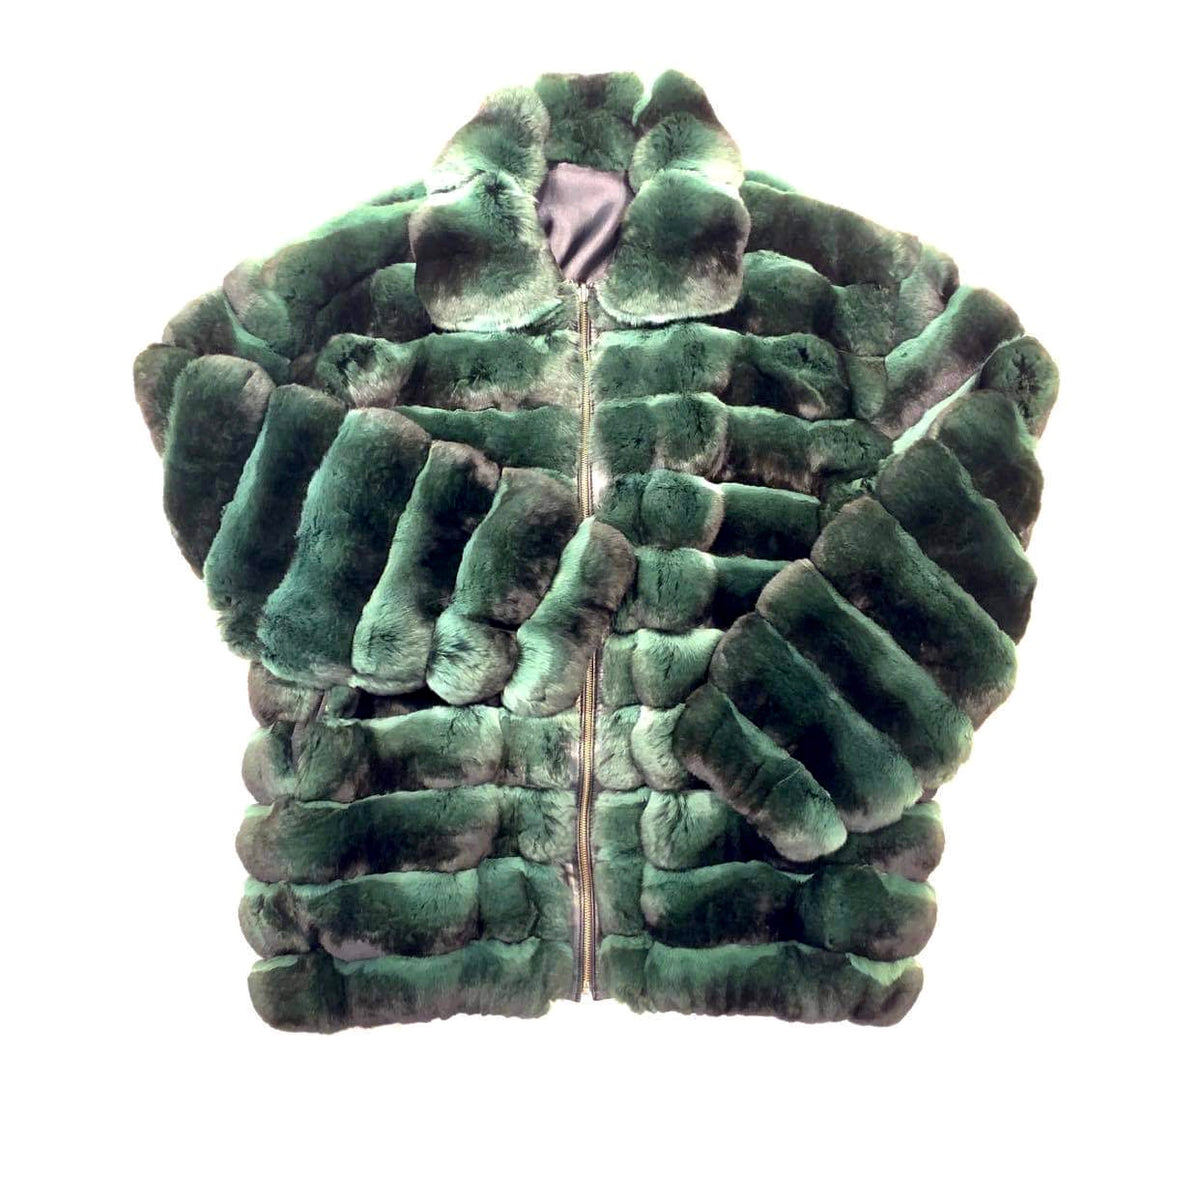 Kashani Men's Forest Green Chinchilla Fur Coat - Dudes Boutique